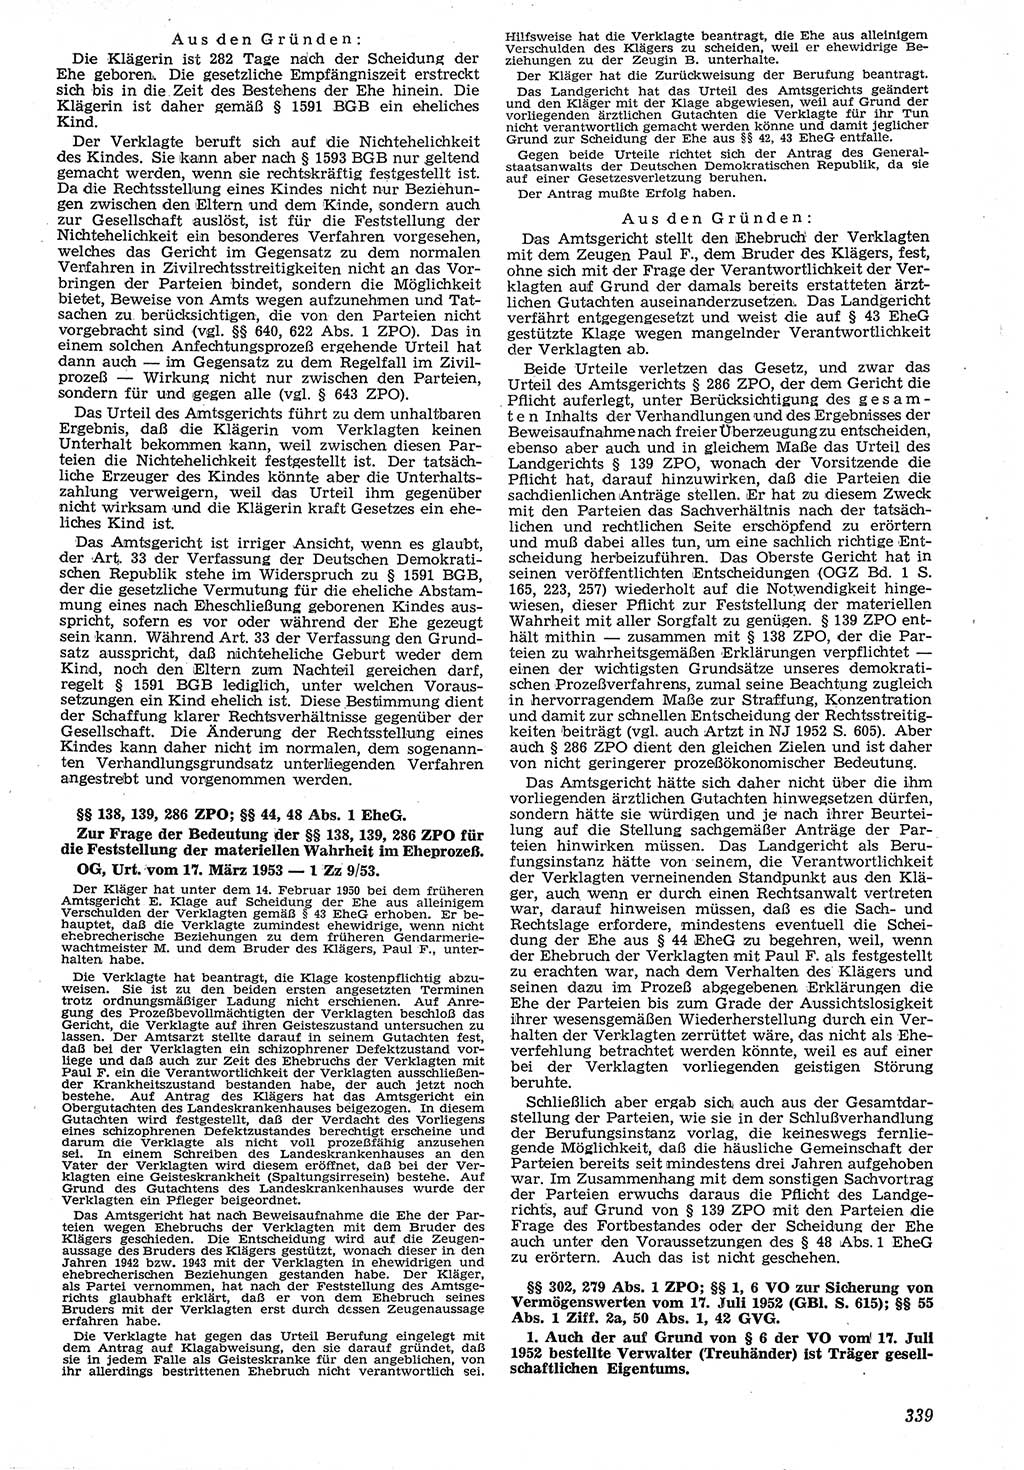 Neue Justiz (NJ), Zeitschrift für Recht und Rechtswissenschaft [Deutsche Demokratische Republik (DDR)], 7. Jahrgang 1953, Seite 339 (NJ DDR 1953, S. 339)